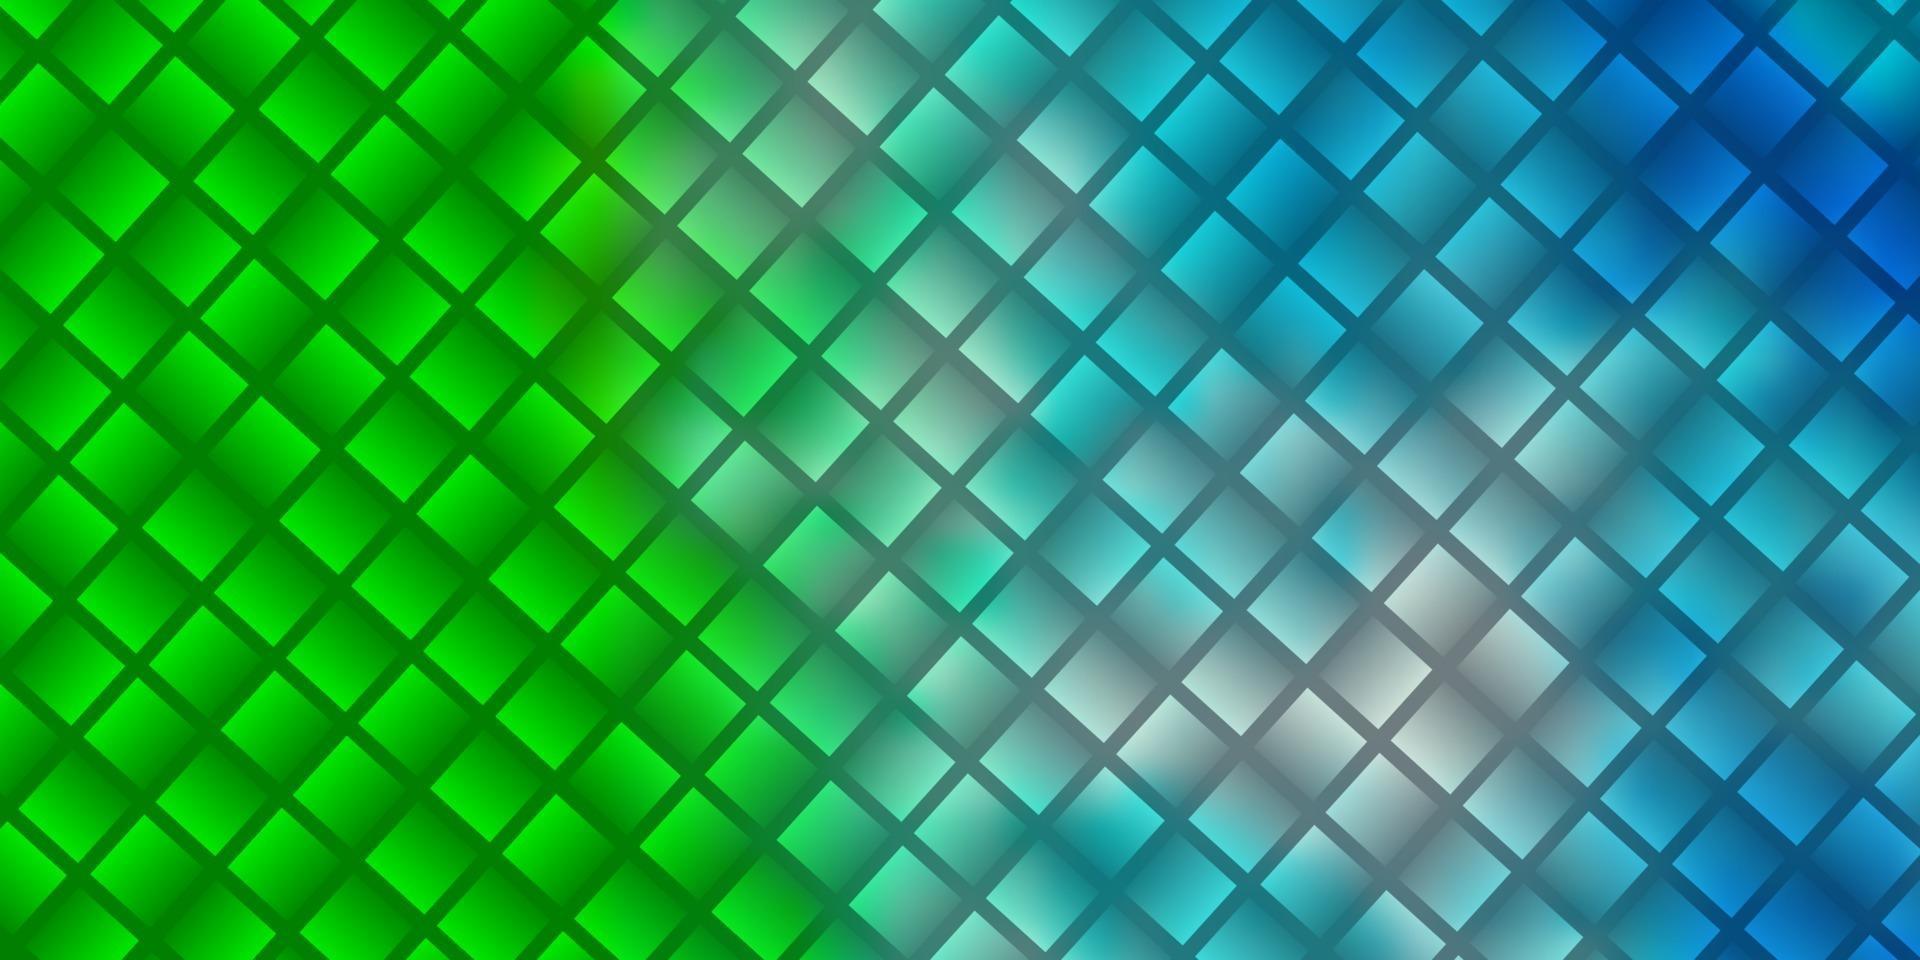 plantilla de vector azul claro, verde con rectángulos.